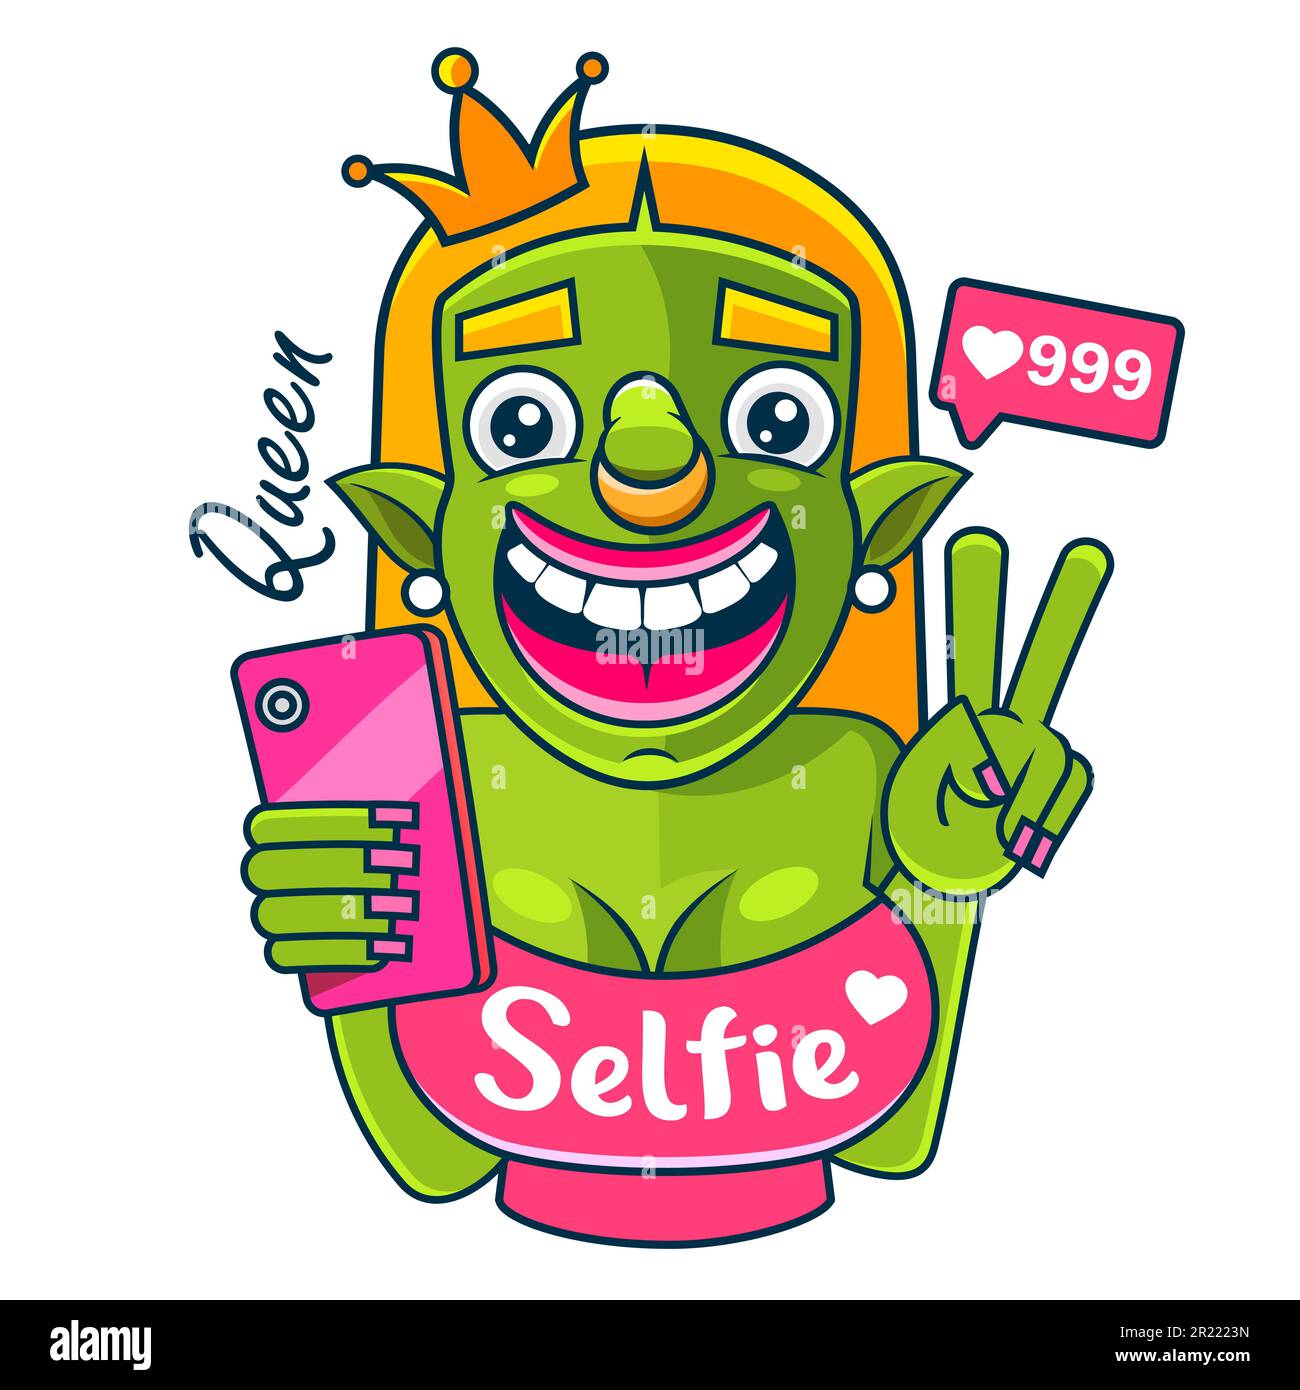 Selfie-Slogan mit Mädchen in Sonnenbrille, die Selfie-Illustrationen machen Stock Vektor